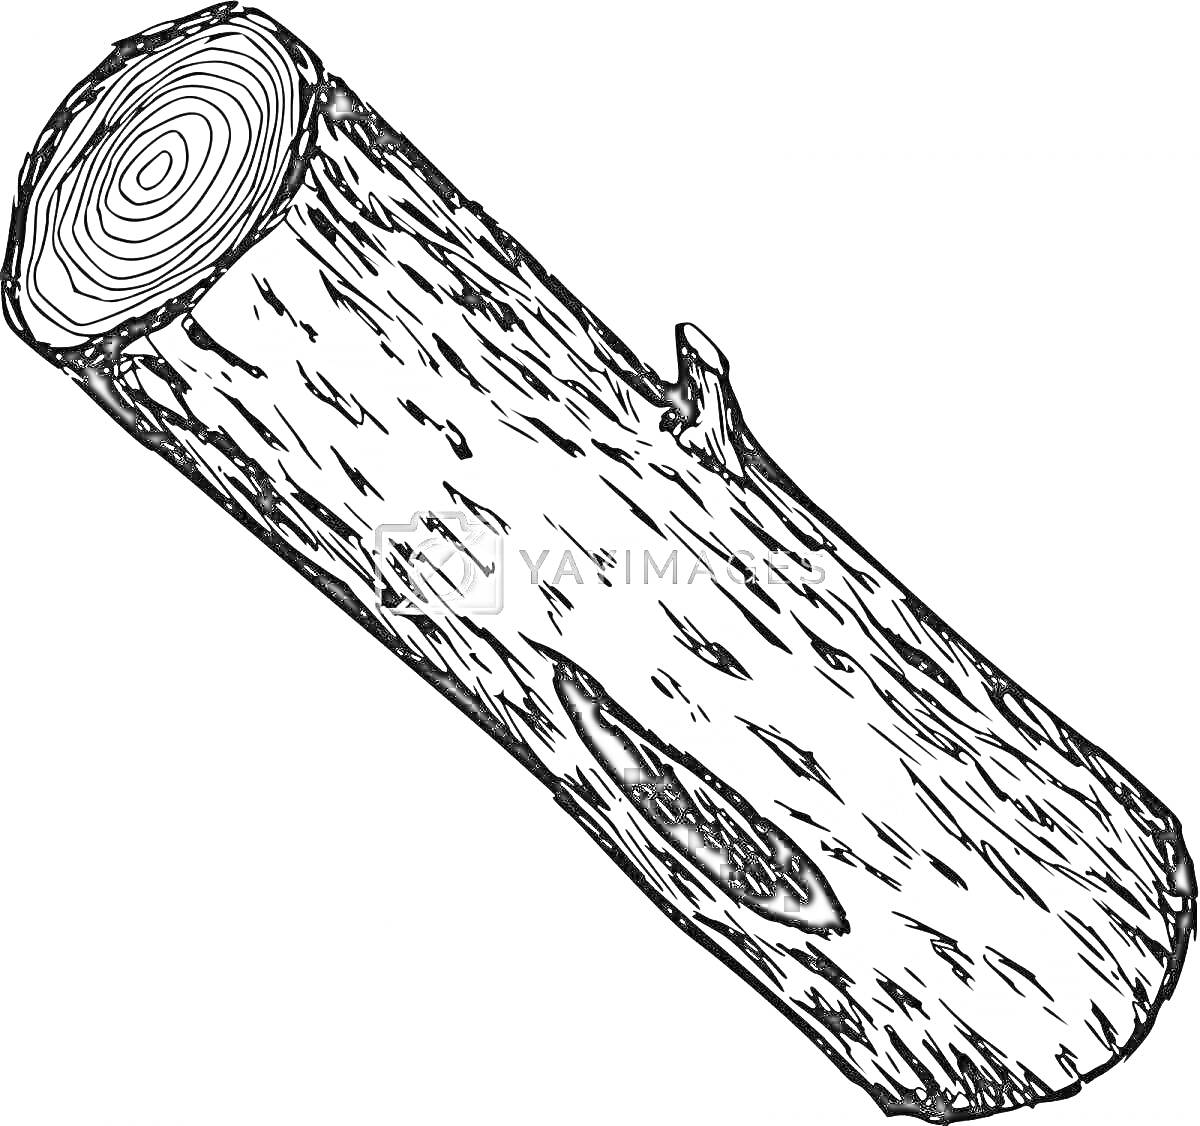 Раскраска Раскраска с изображением одного бревна с кольцами на срезе и небольшой веткой сбоку